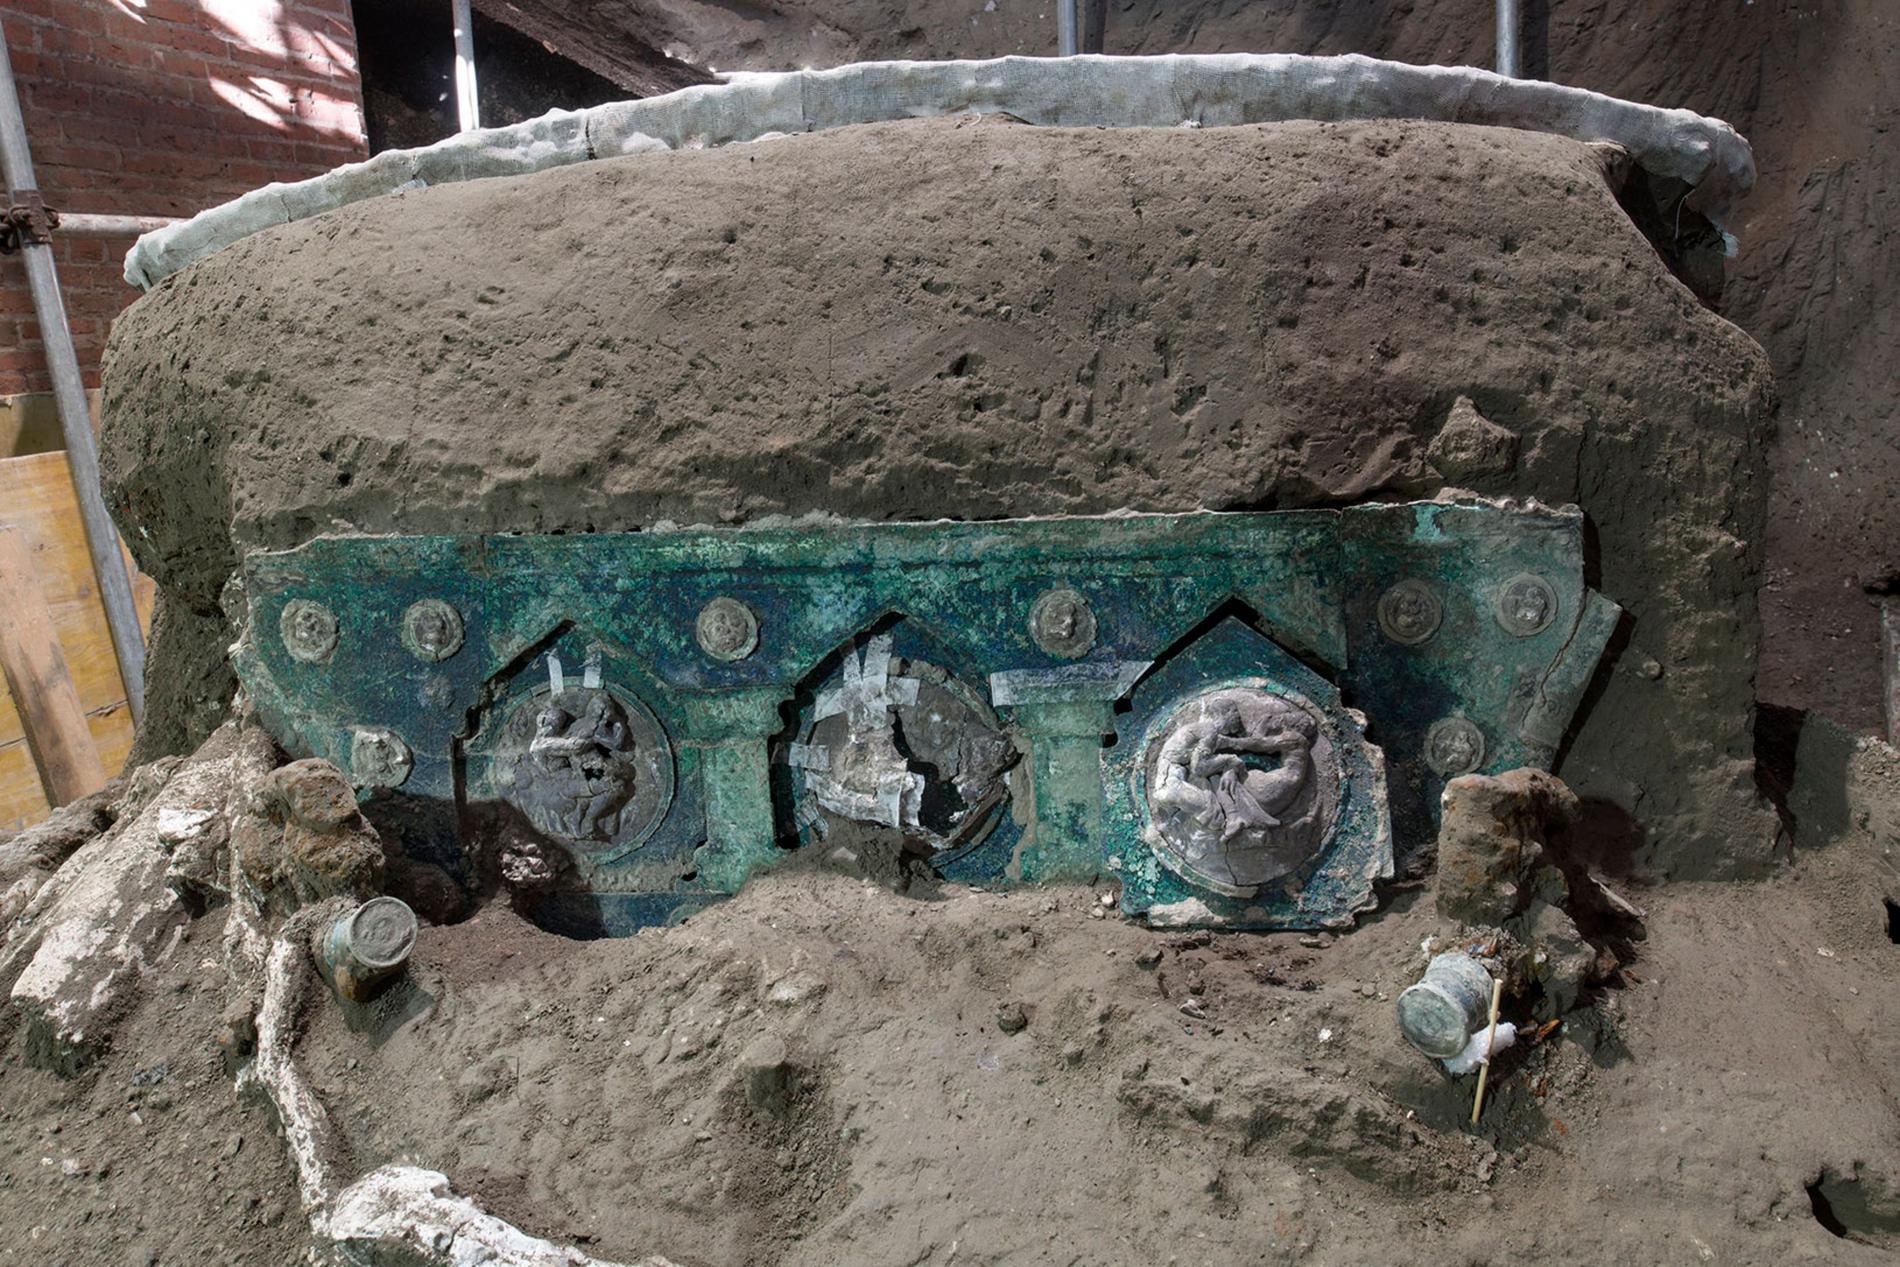 Den ceremoniella romerska vagn som hittats av arkeologer utanför Pompeji, den italienska stad som ödelades av ett vulkanutbrott år 79.